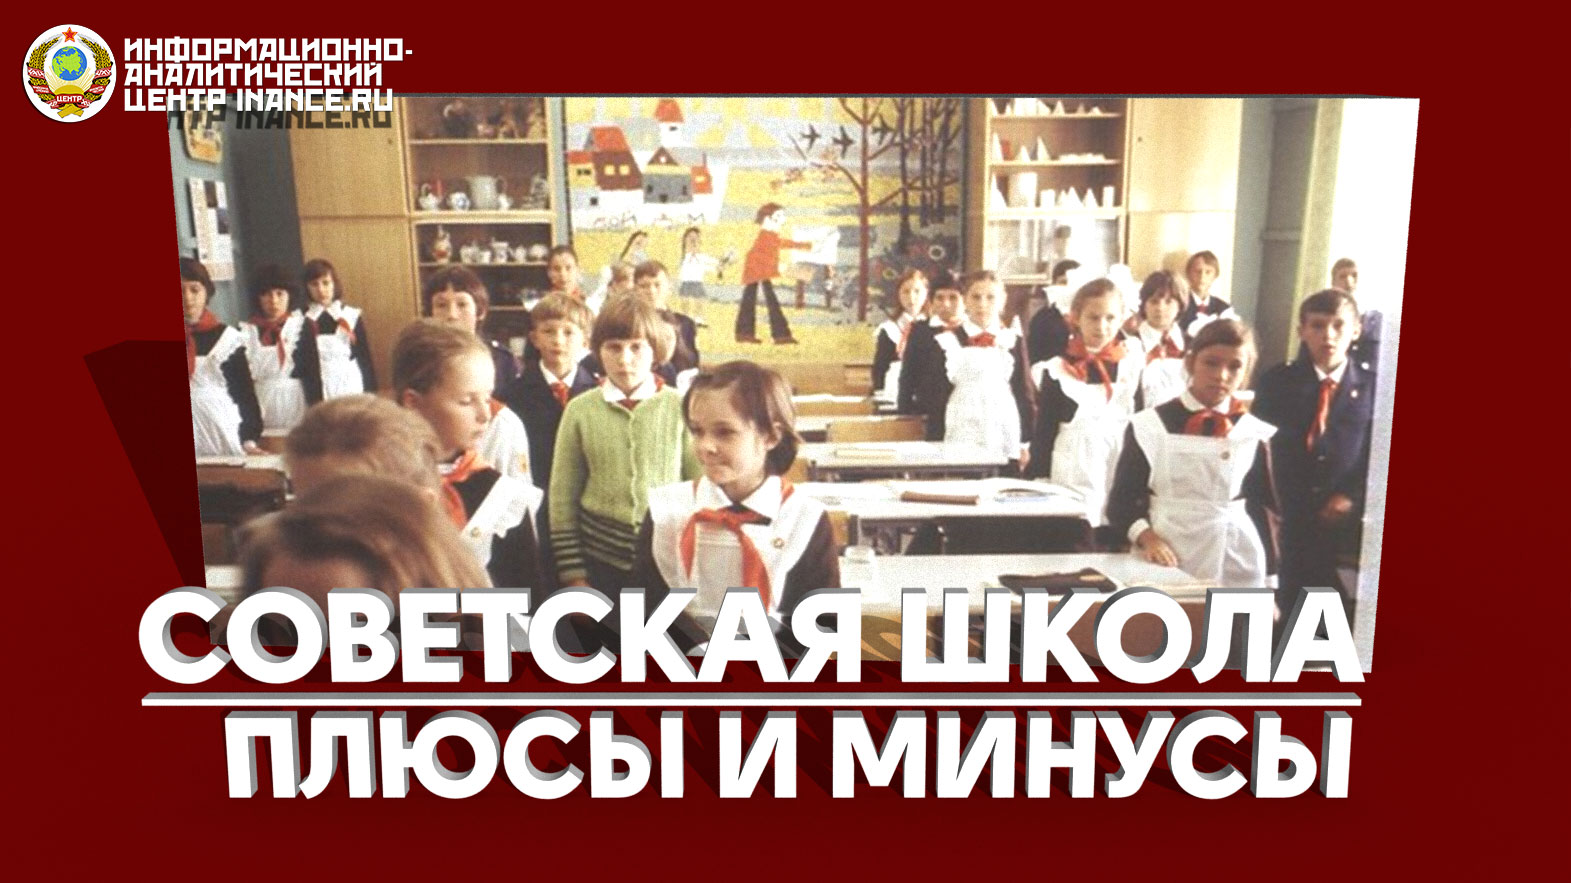 Реферат: Образование Советского Союза